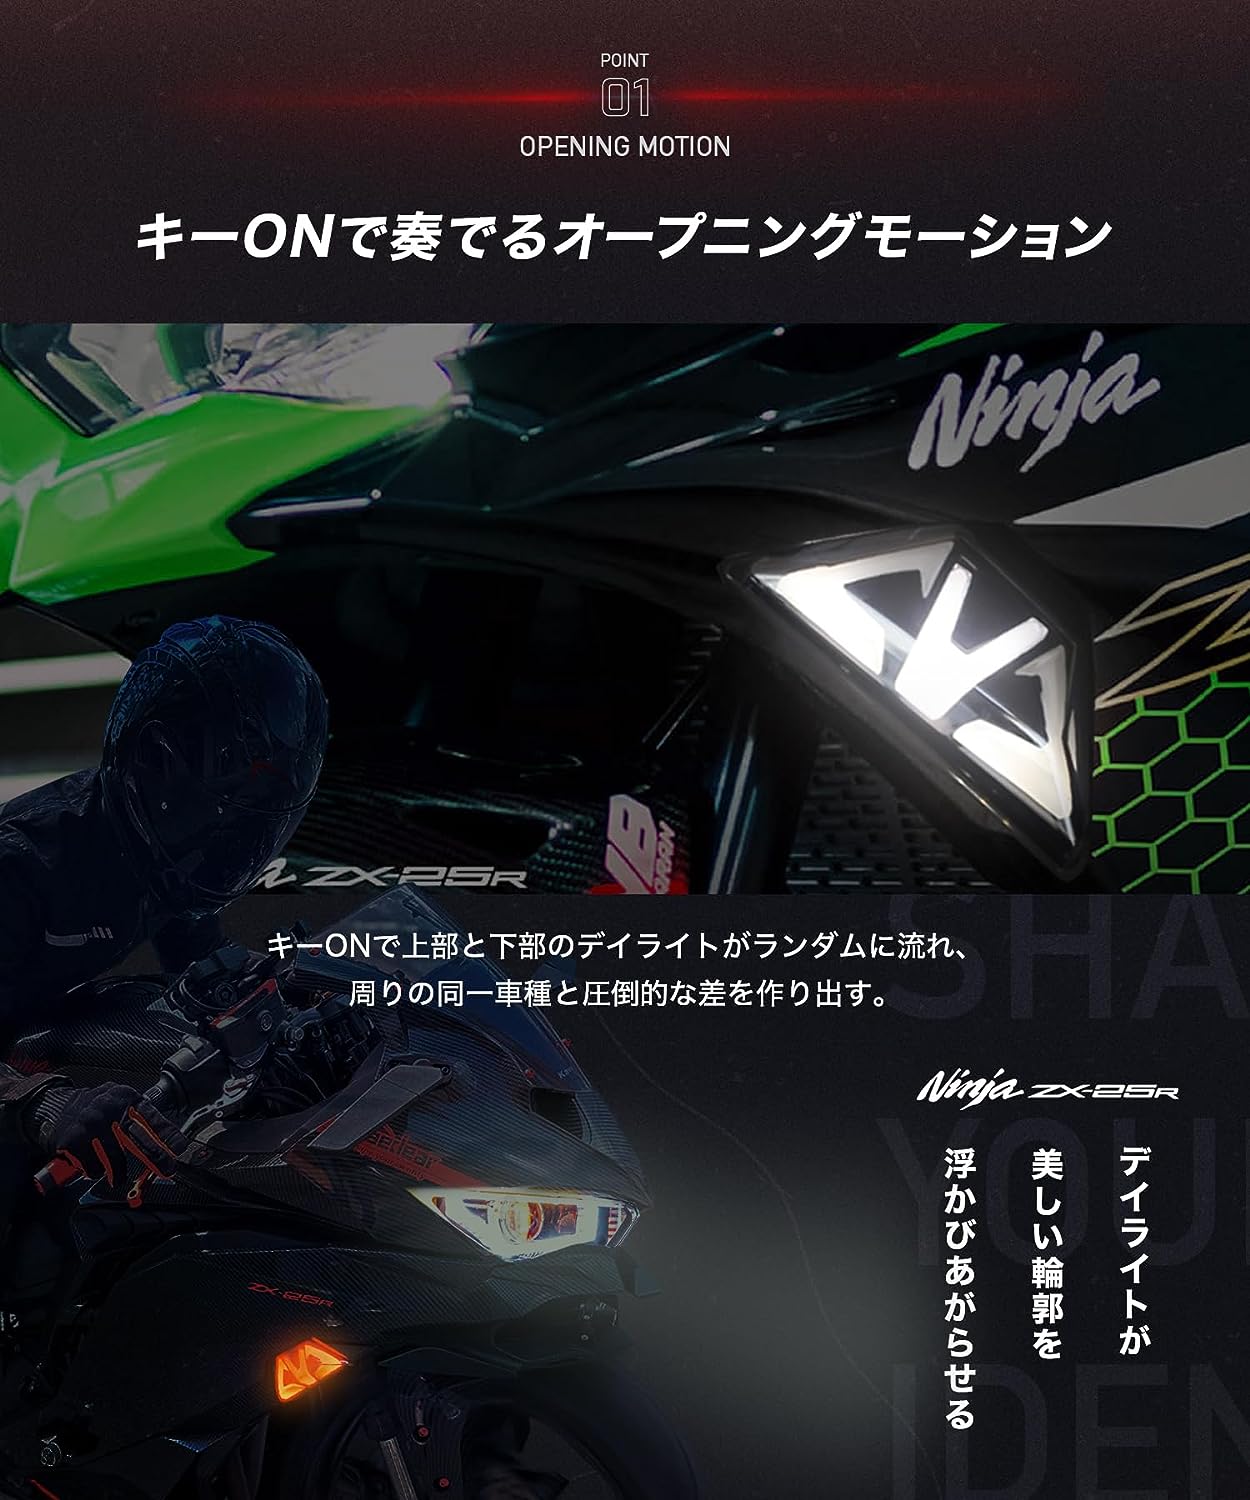 Cyber LED KAWASAKI Ninja ZX-25R カスタムウィンカー / Ninja250 